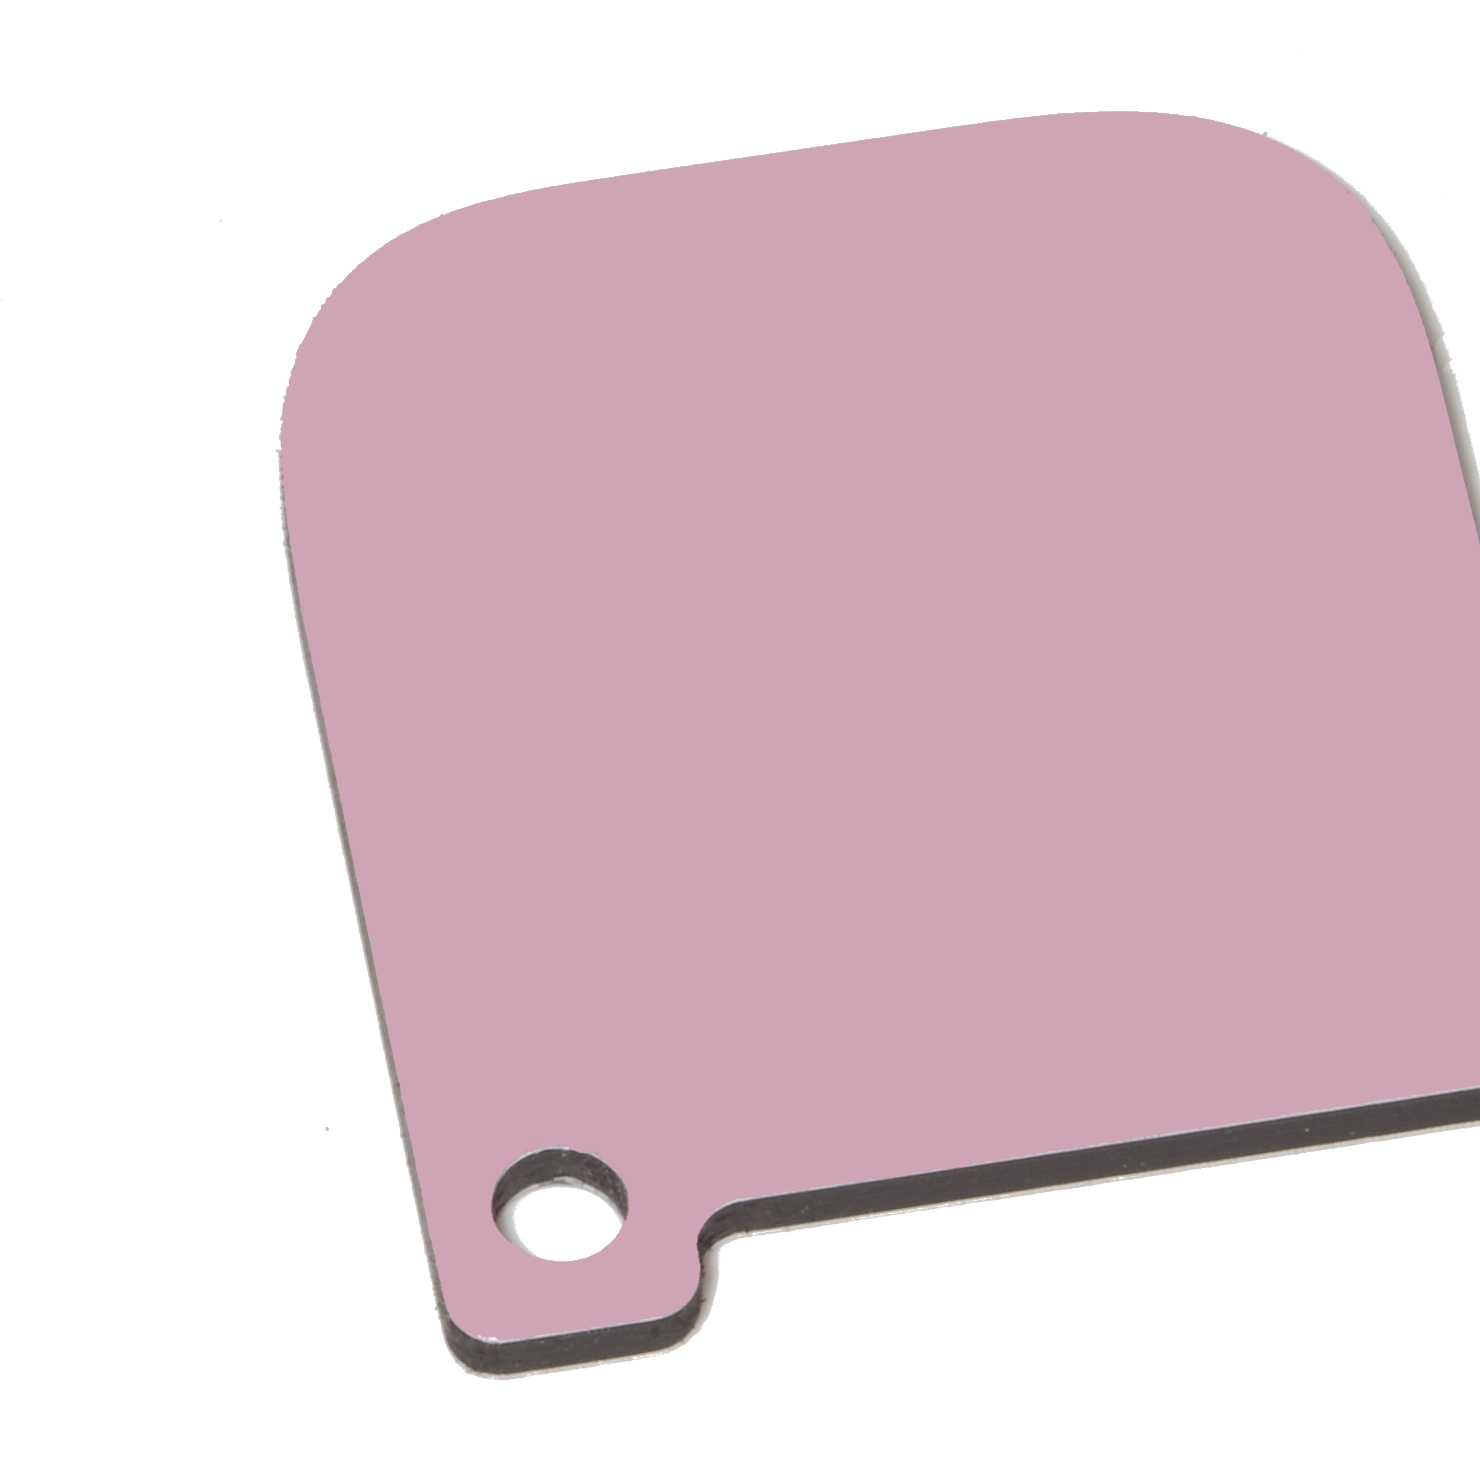 Iribond ACM Pink Matt/Gloss Sheet | Plastock